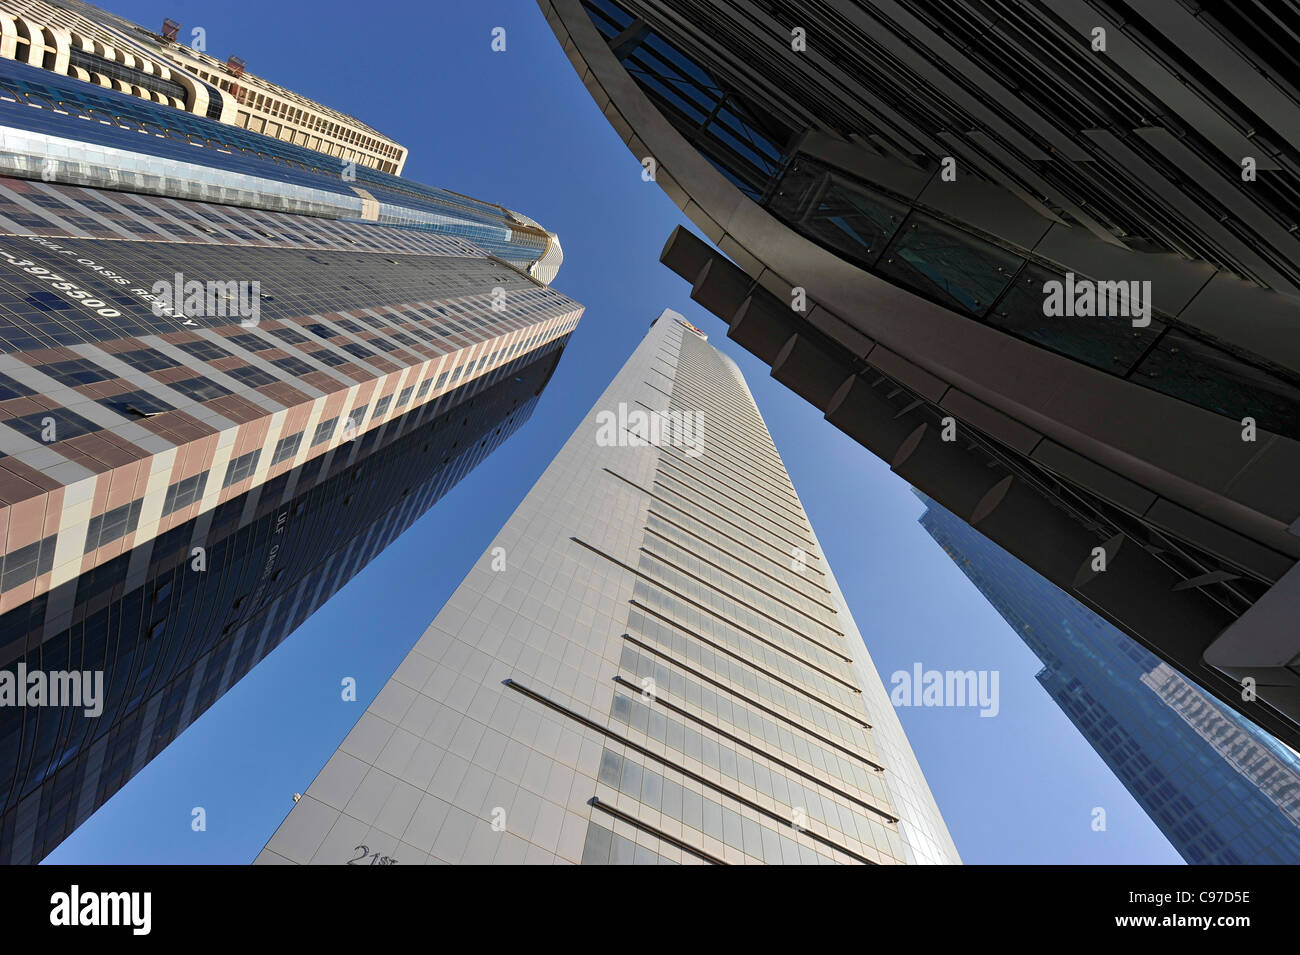 La tour du 21e siècle, les bâtiments de grande hauteur, hôtels, des gratte-ciel, l'architecture moderne, Sheikh Zayed Road, du quartier financier, Dubaï Banque D'Images